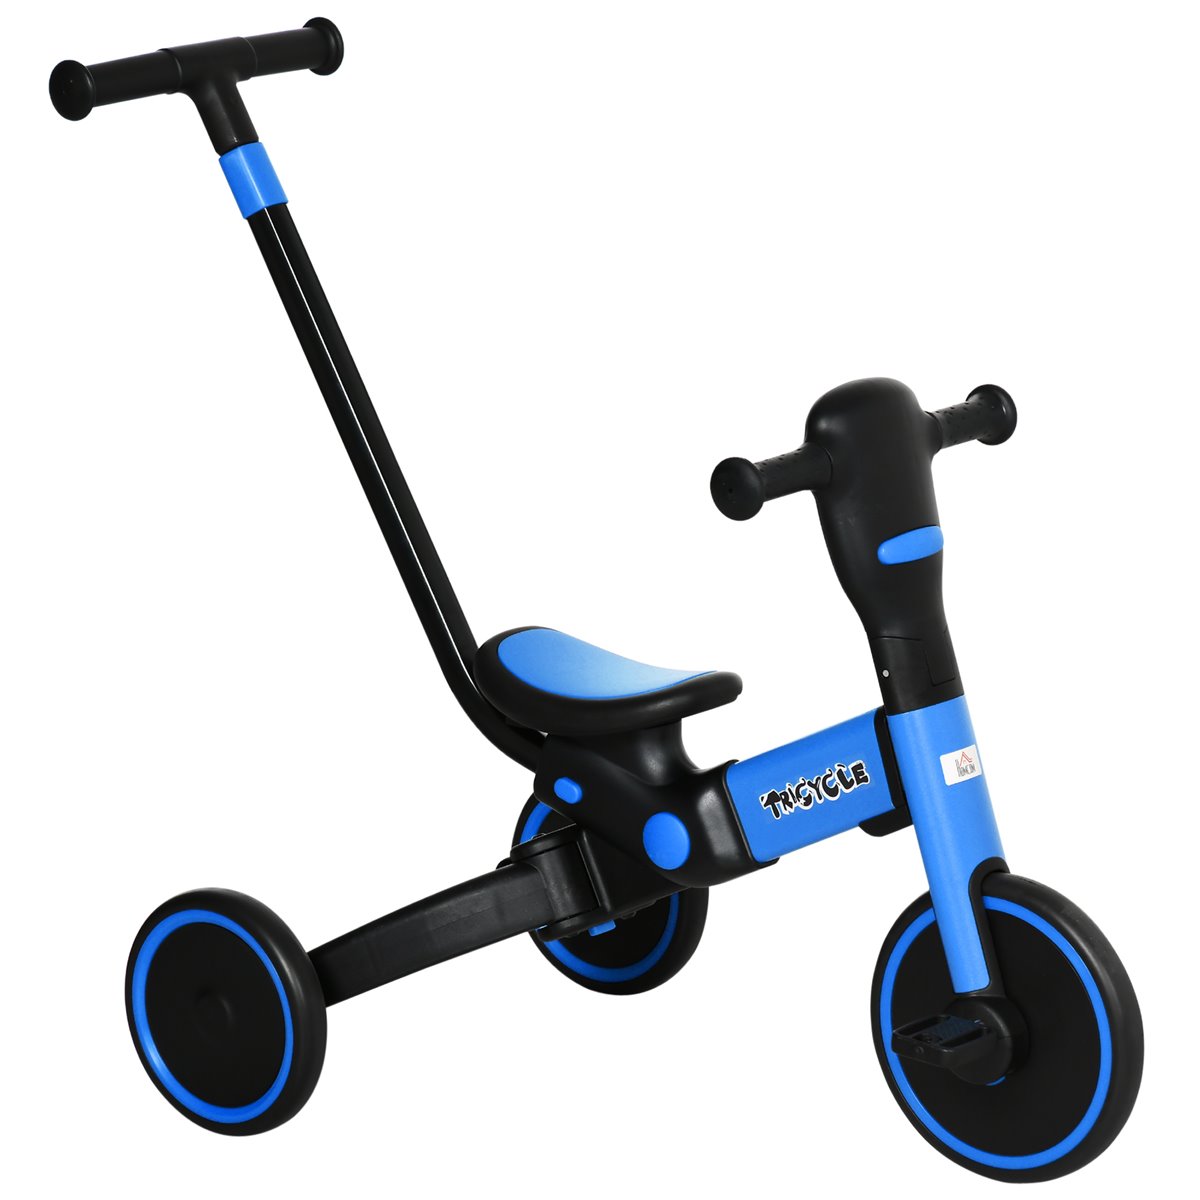 Desenho de Um triciclo infantil pintado e colorido por Usuário não